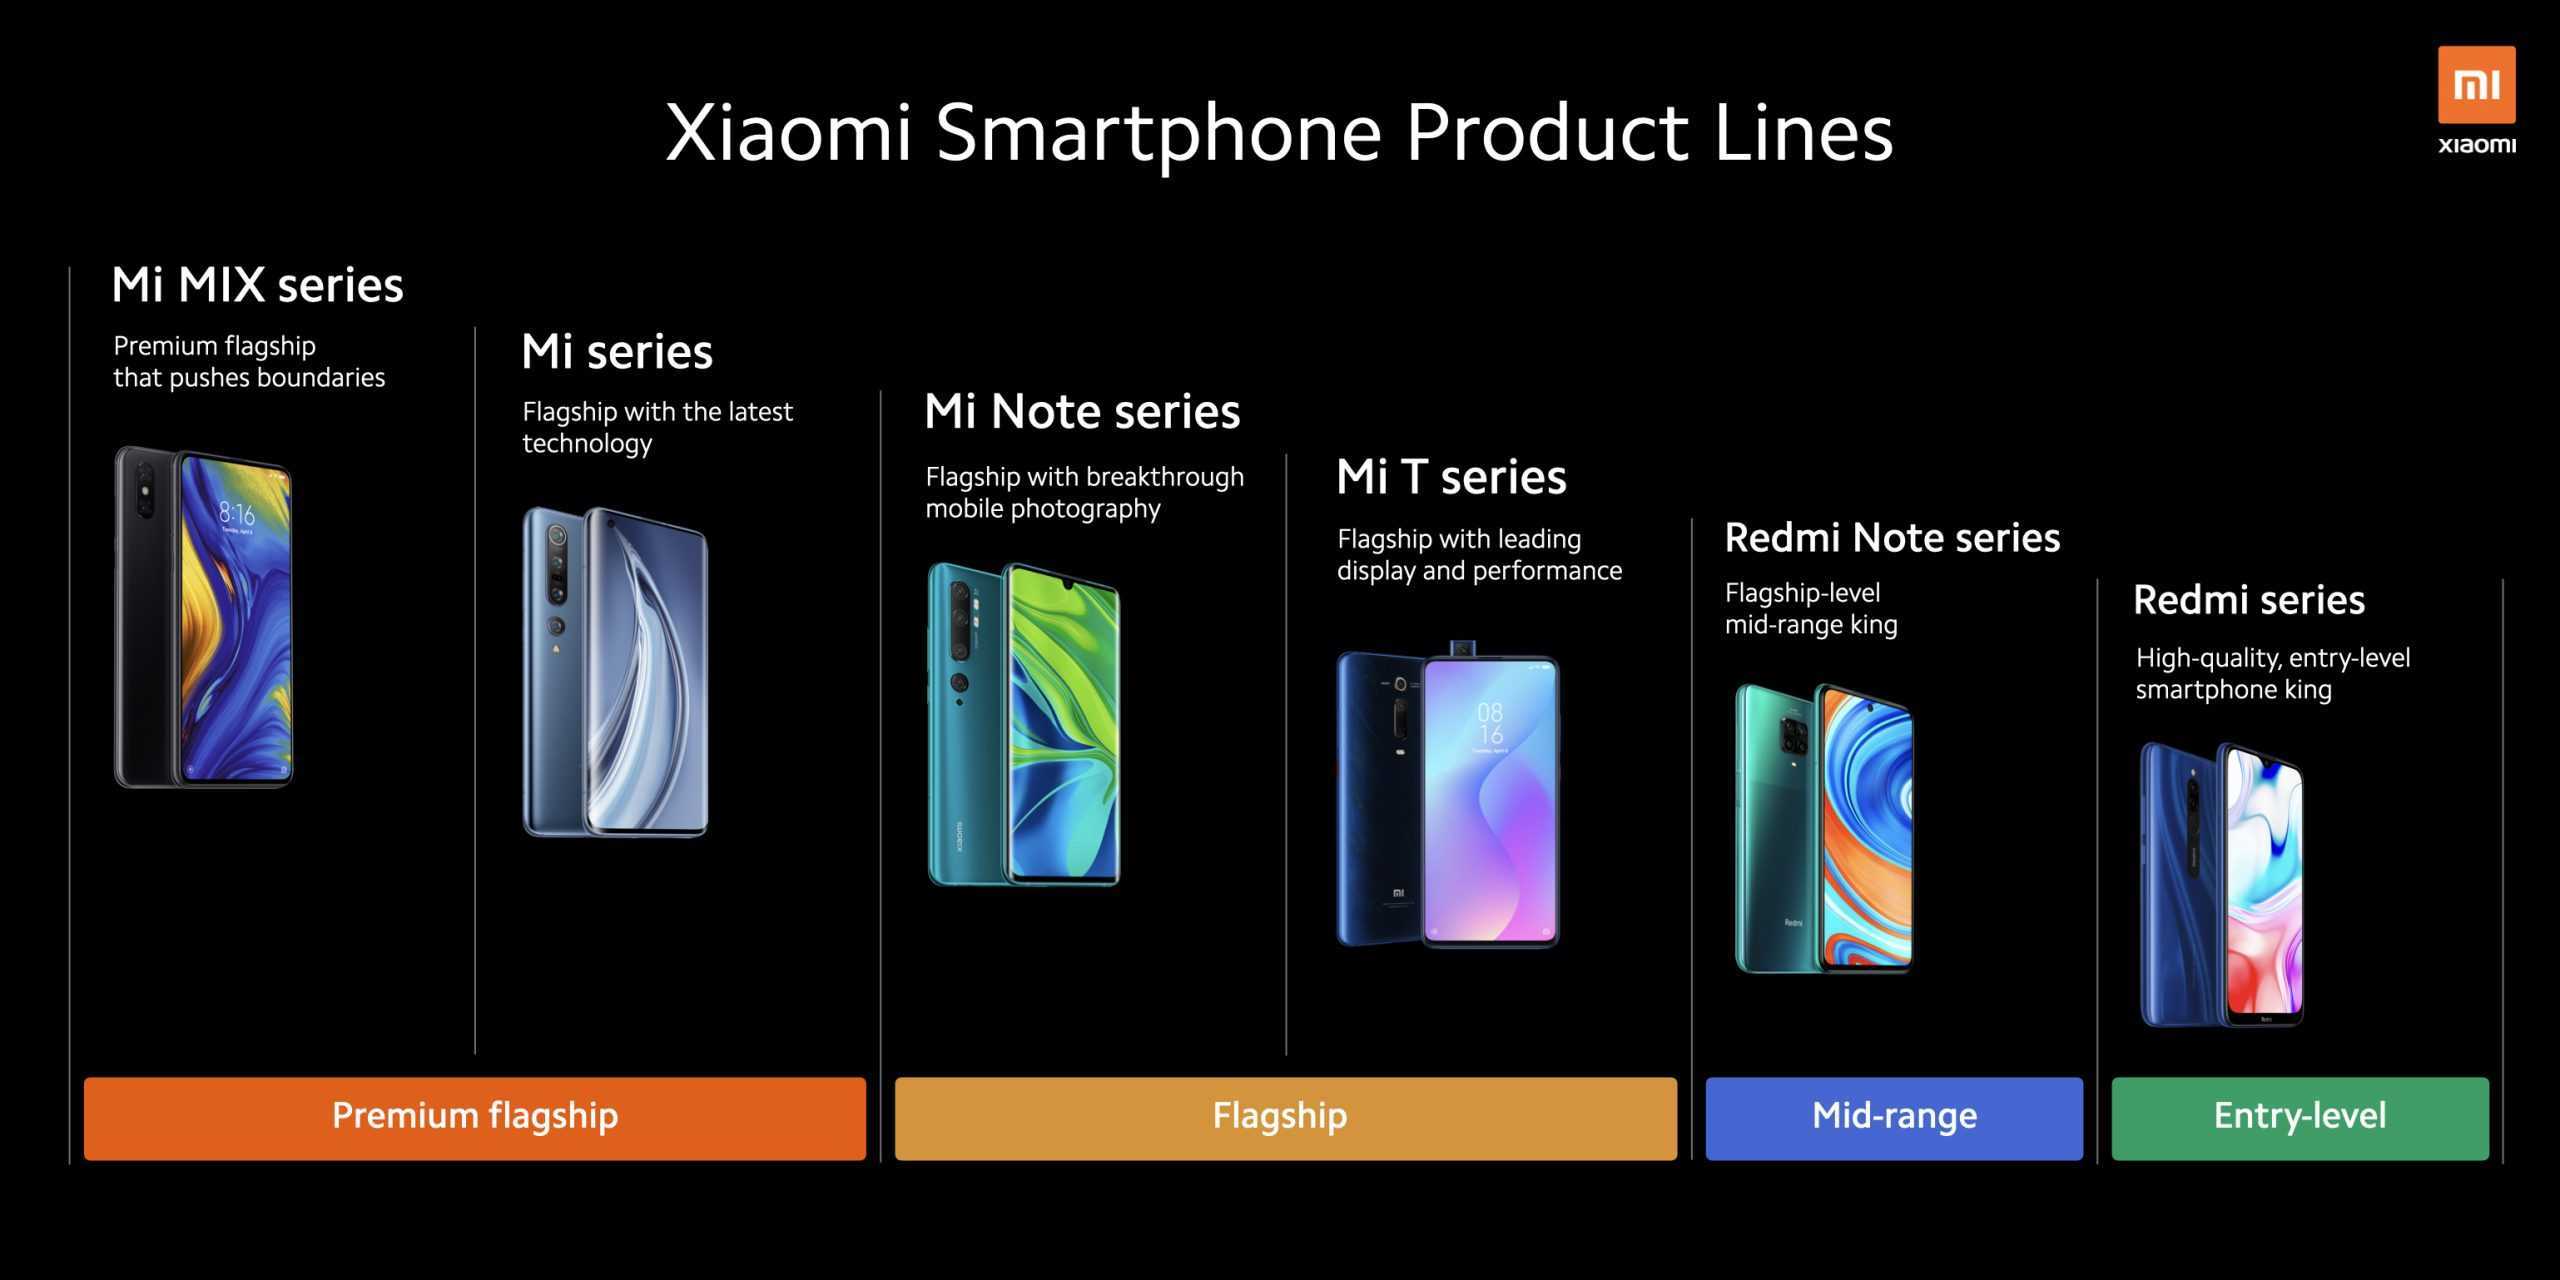 Xiaomi nfc: список телефонов сяоми с поддержкой модуля, есть ли чип в смартфонах redmi note 5 и 4x, mi5, redmi 4x и 5 plus, mi a1, как работает?